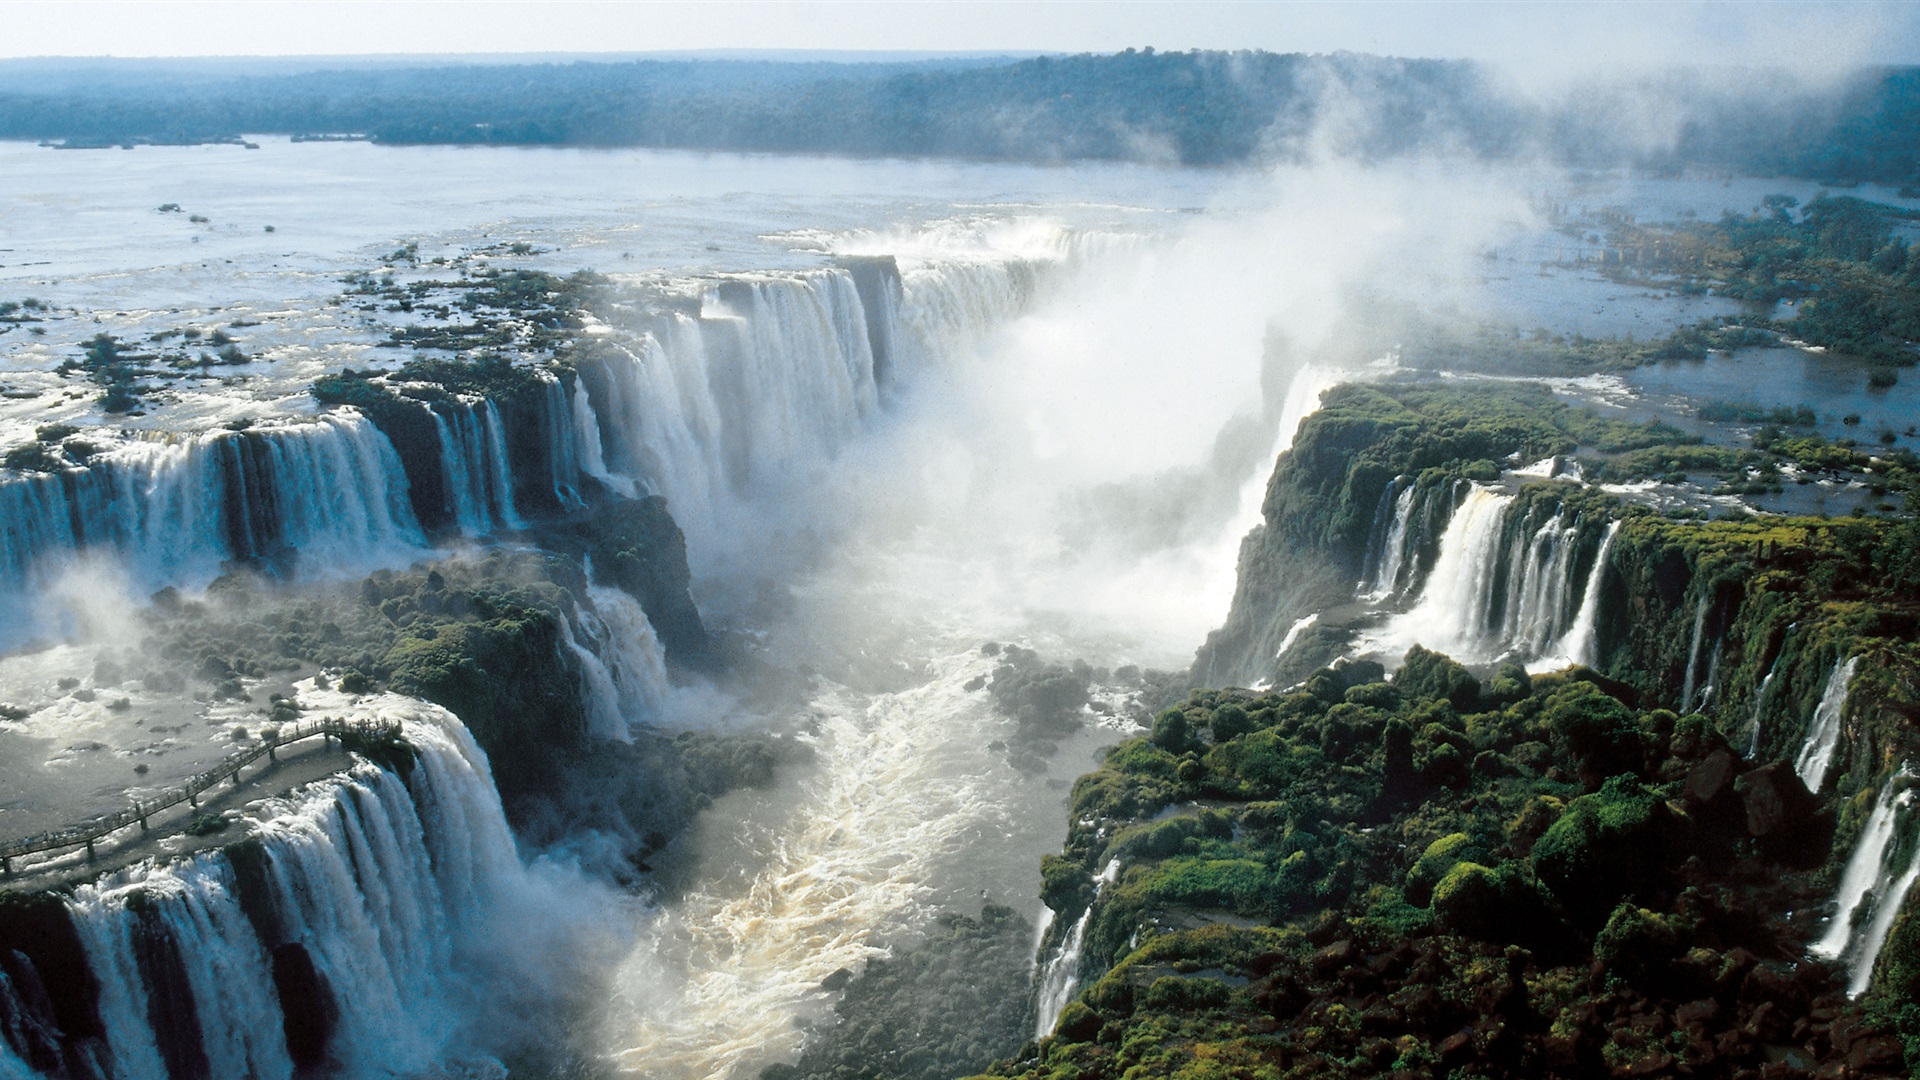 Na imagem, temos as cataratas do Iguaçu. São quedas d'água gigantescas.